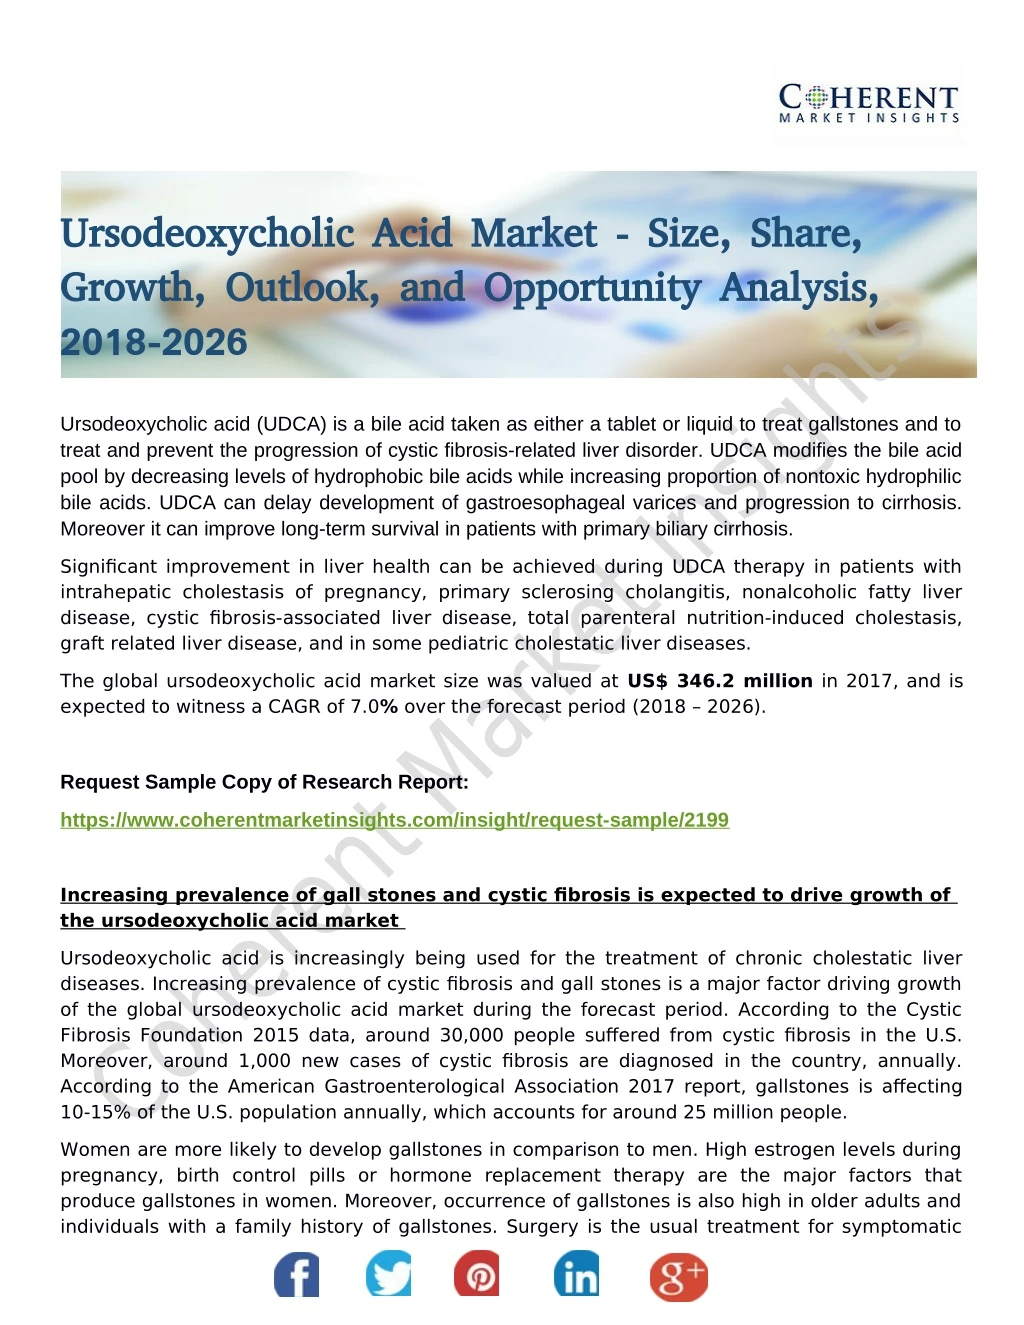 ursodeoxycholic acid market size share